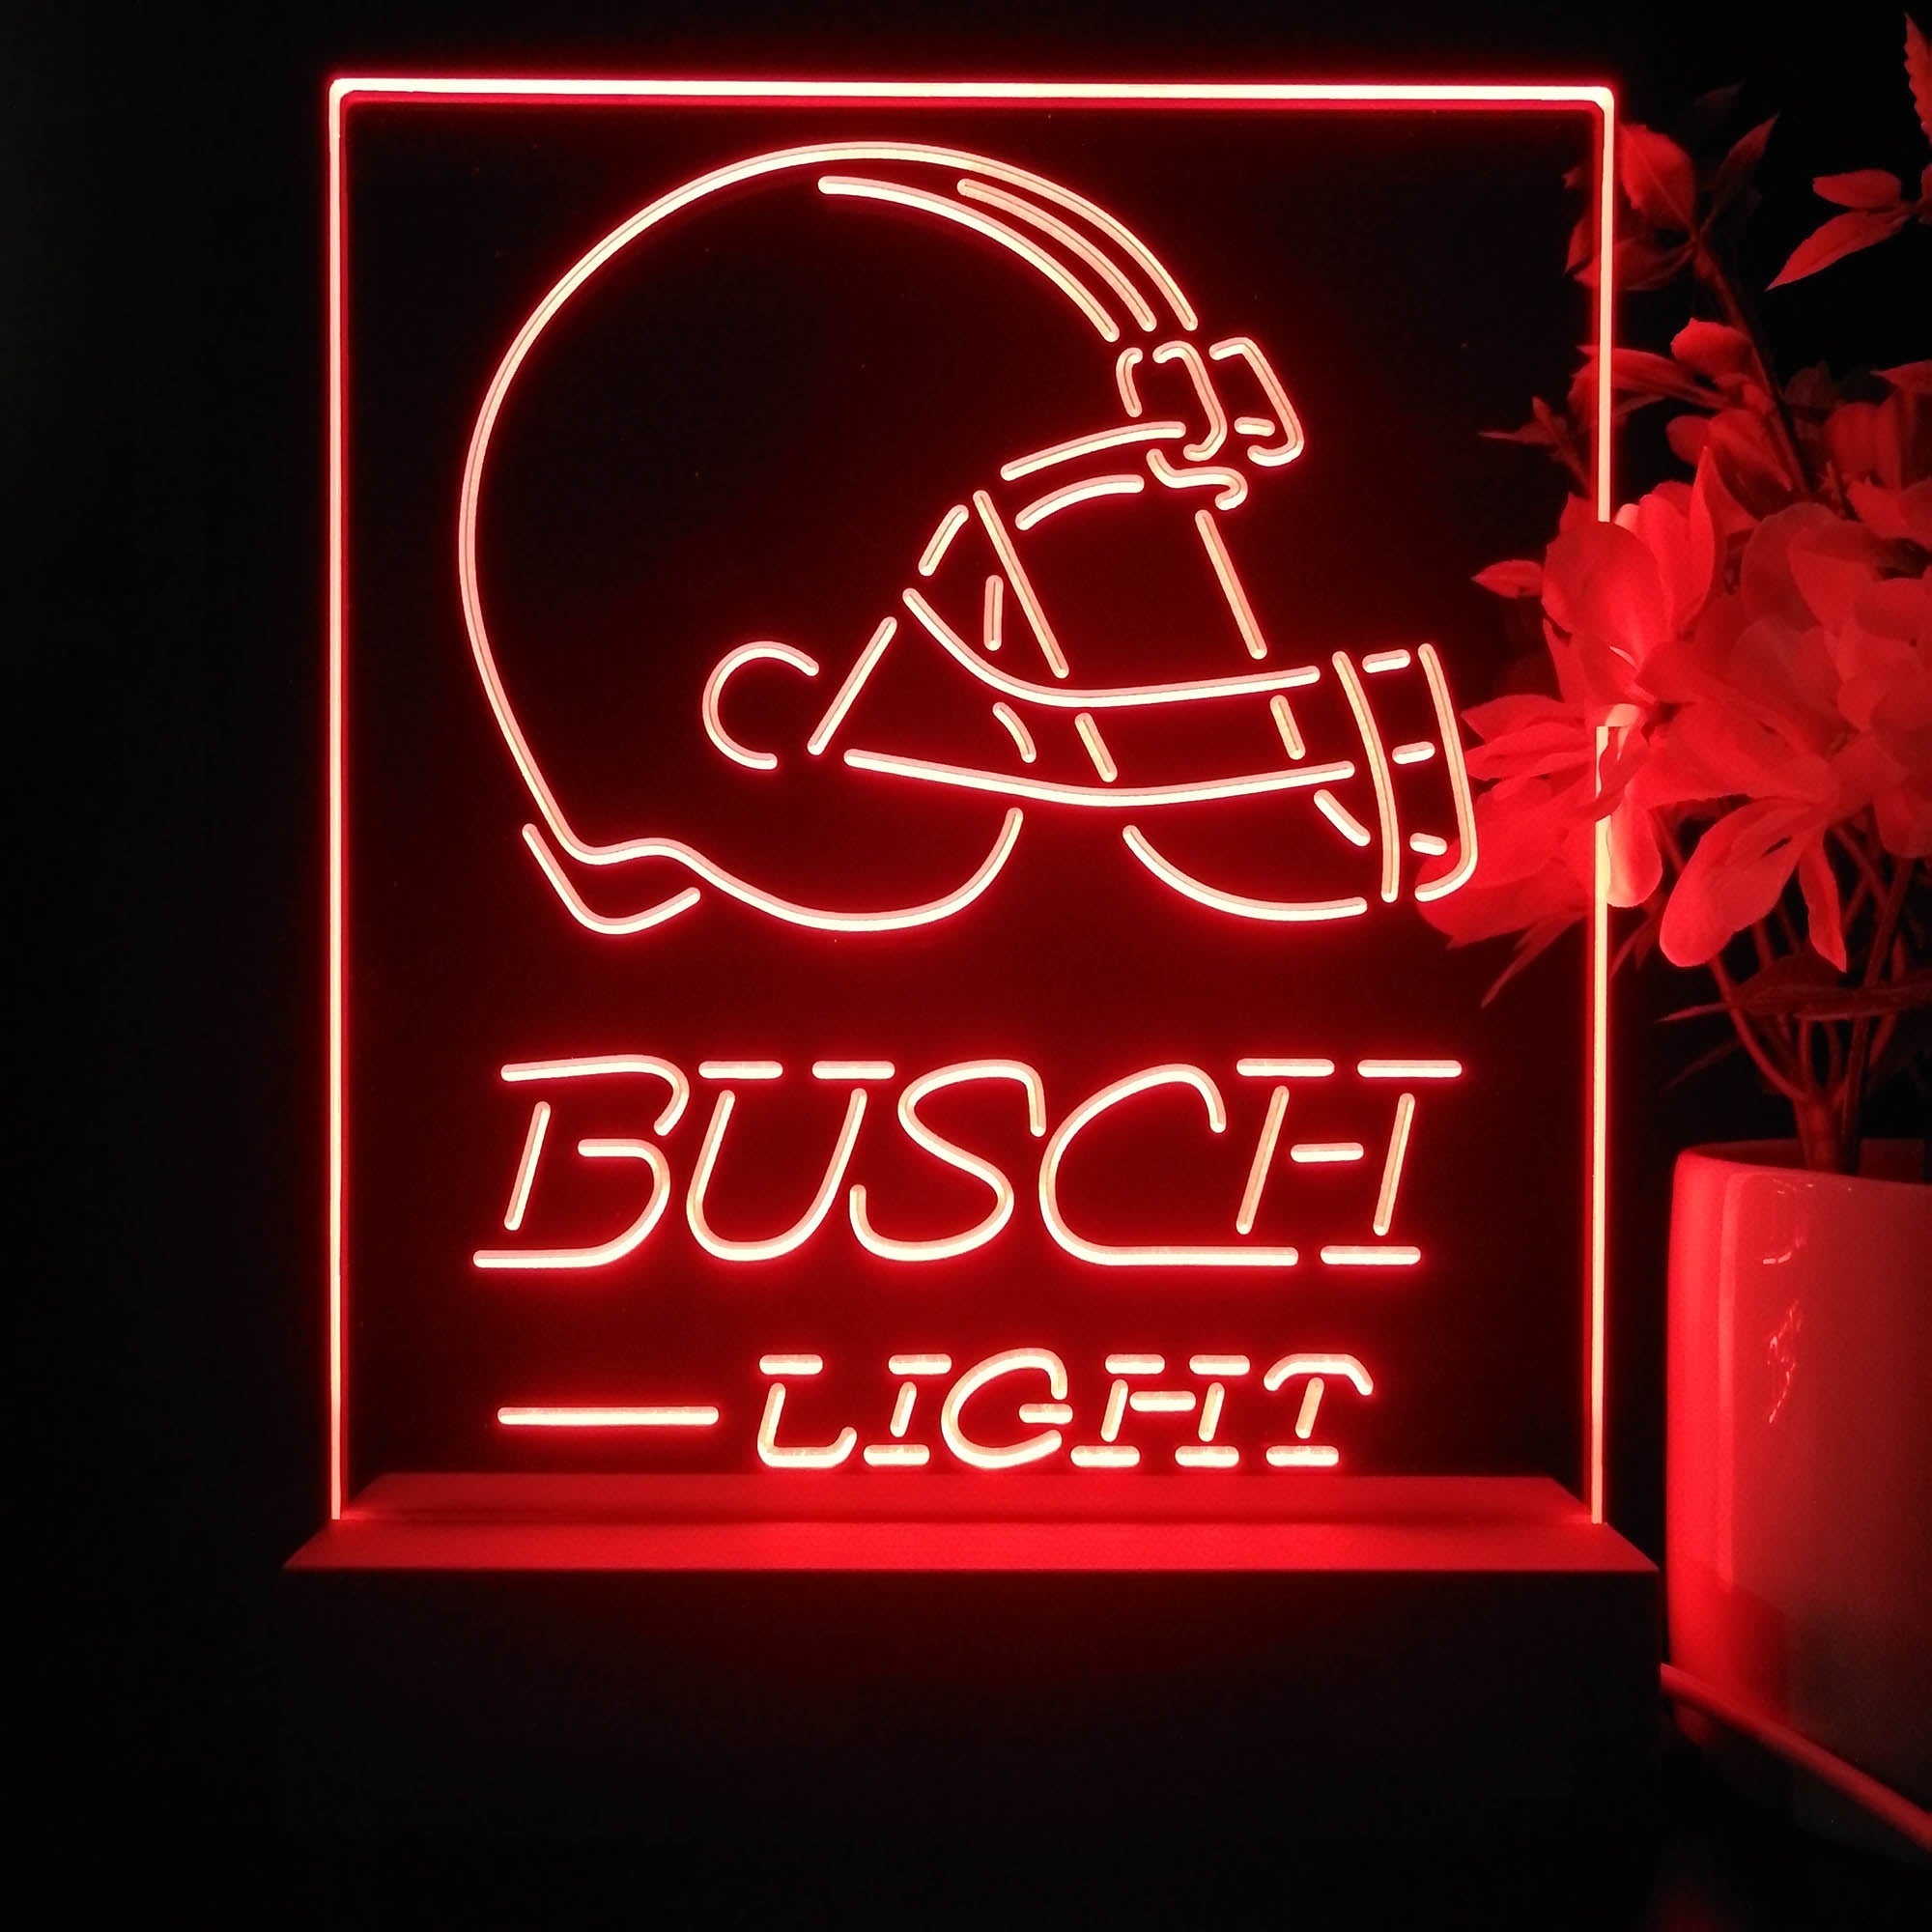 Cleveland Browns Busch Light Neon Sign Pub Bar Lamp